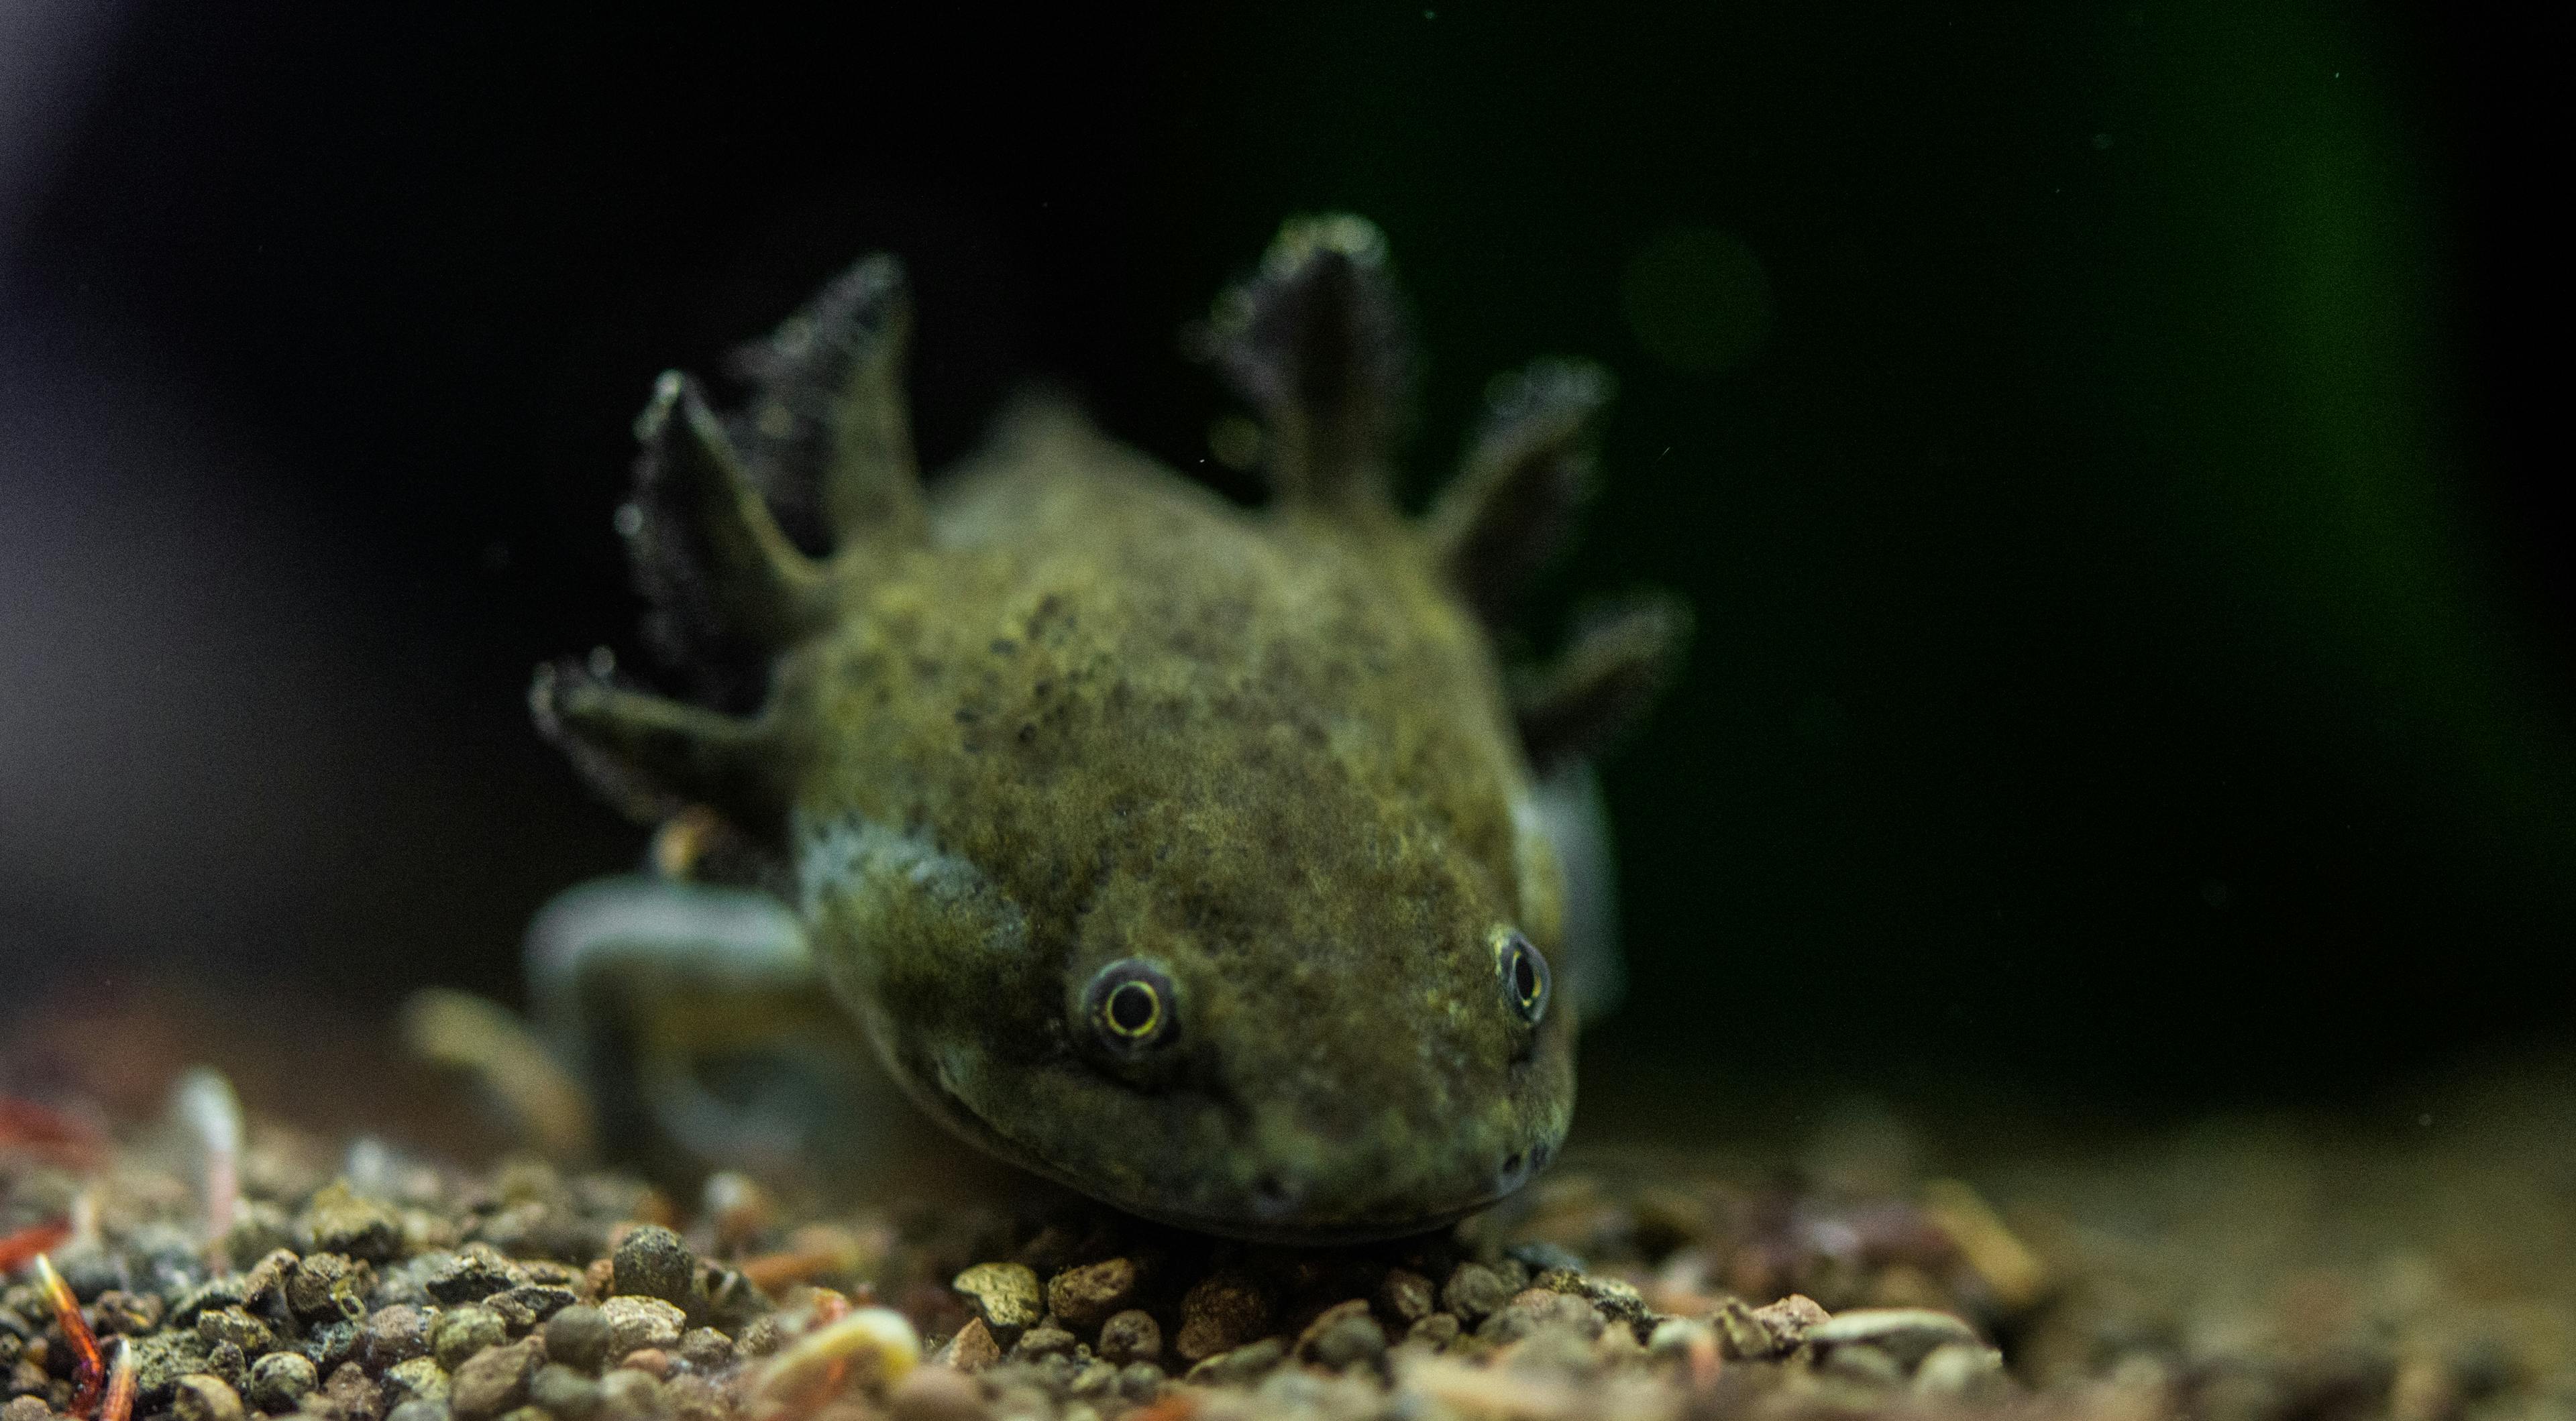 An Axolotl salamander